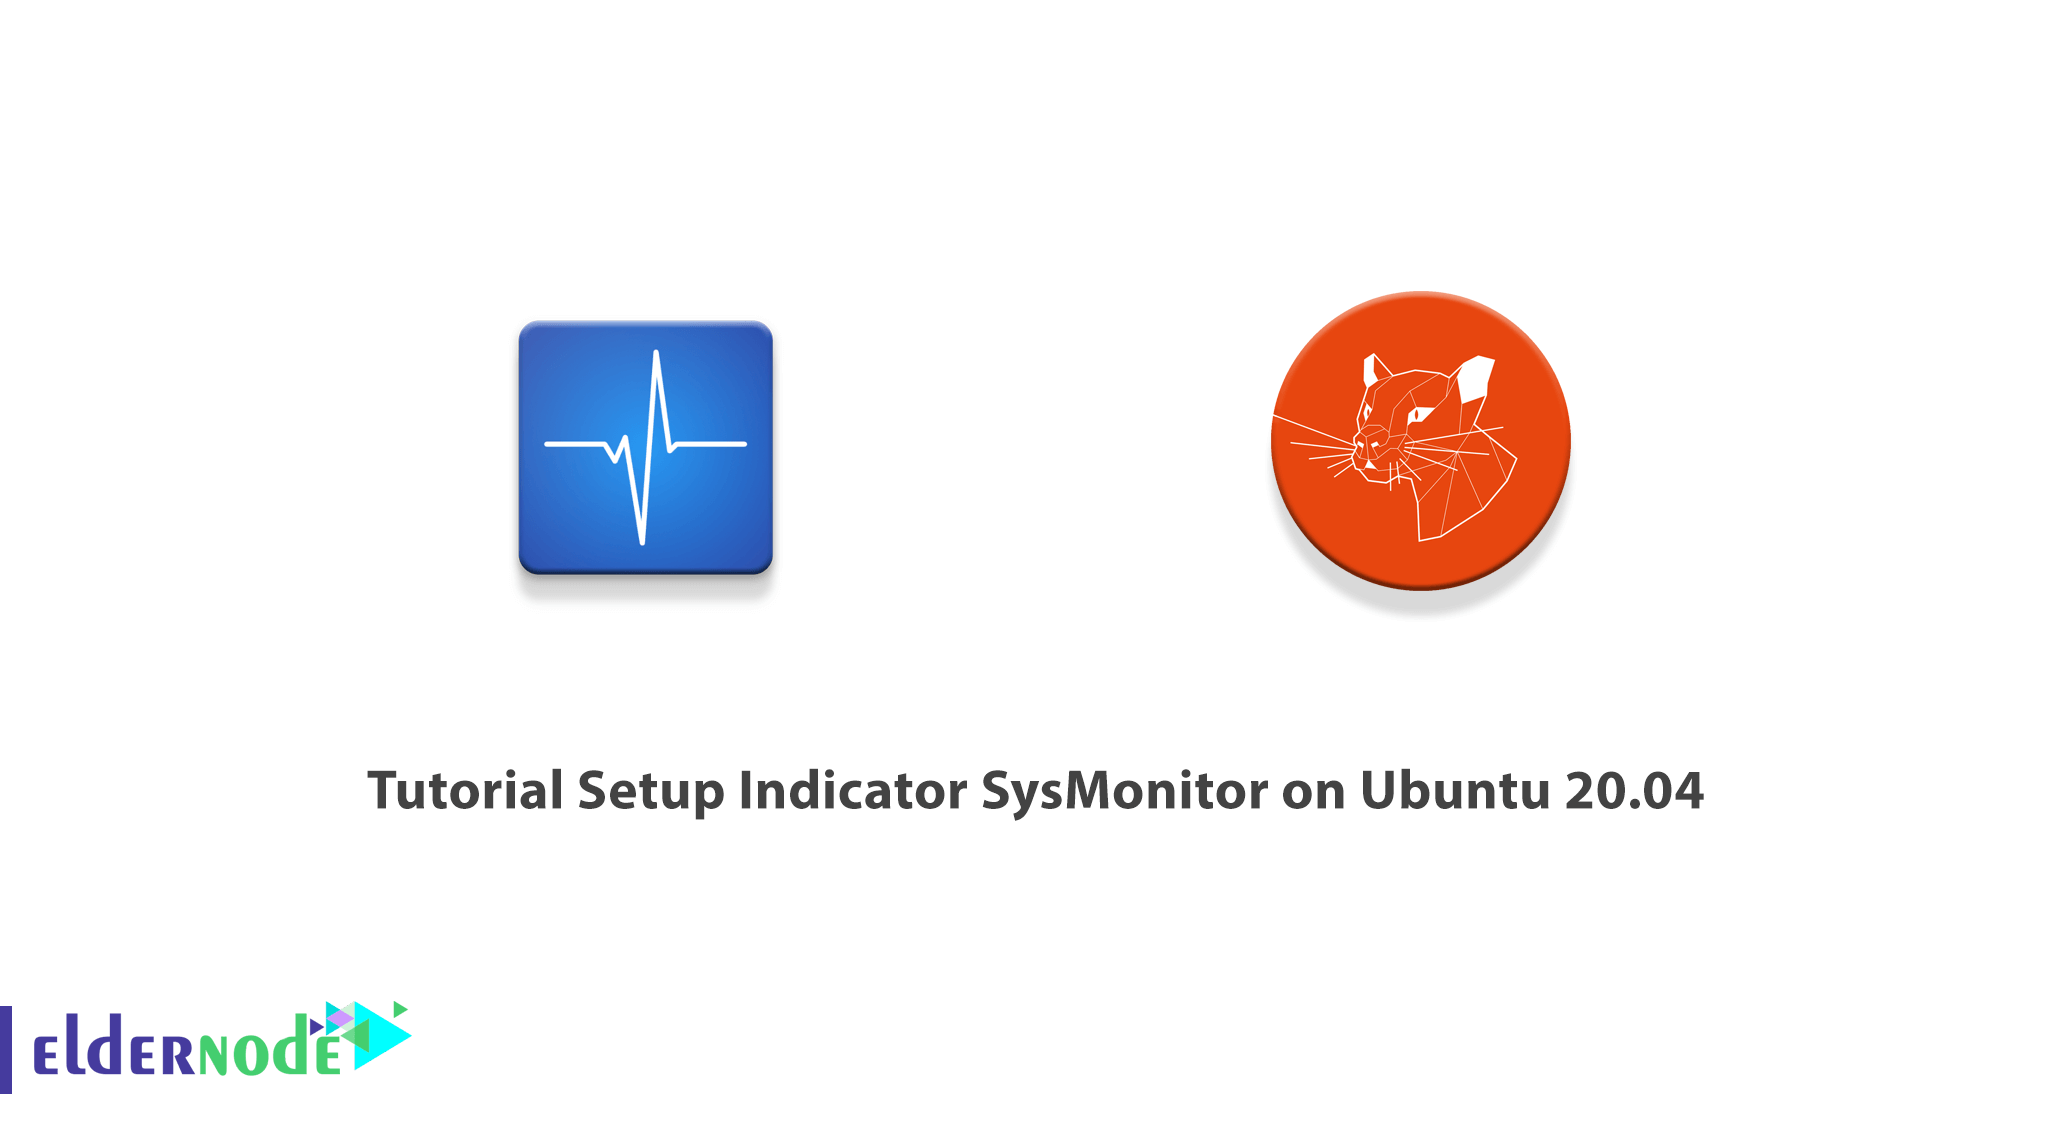 Tutorial Setup Indicator SysMonitor on Ubuntu 20.04